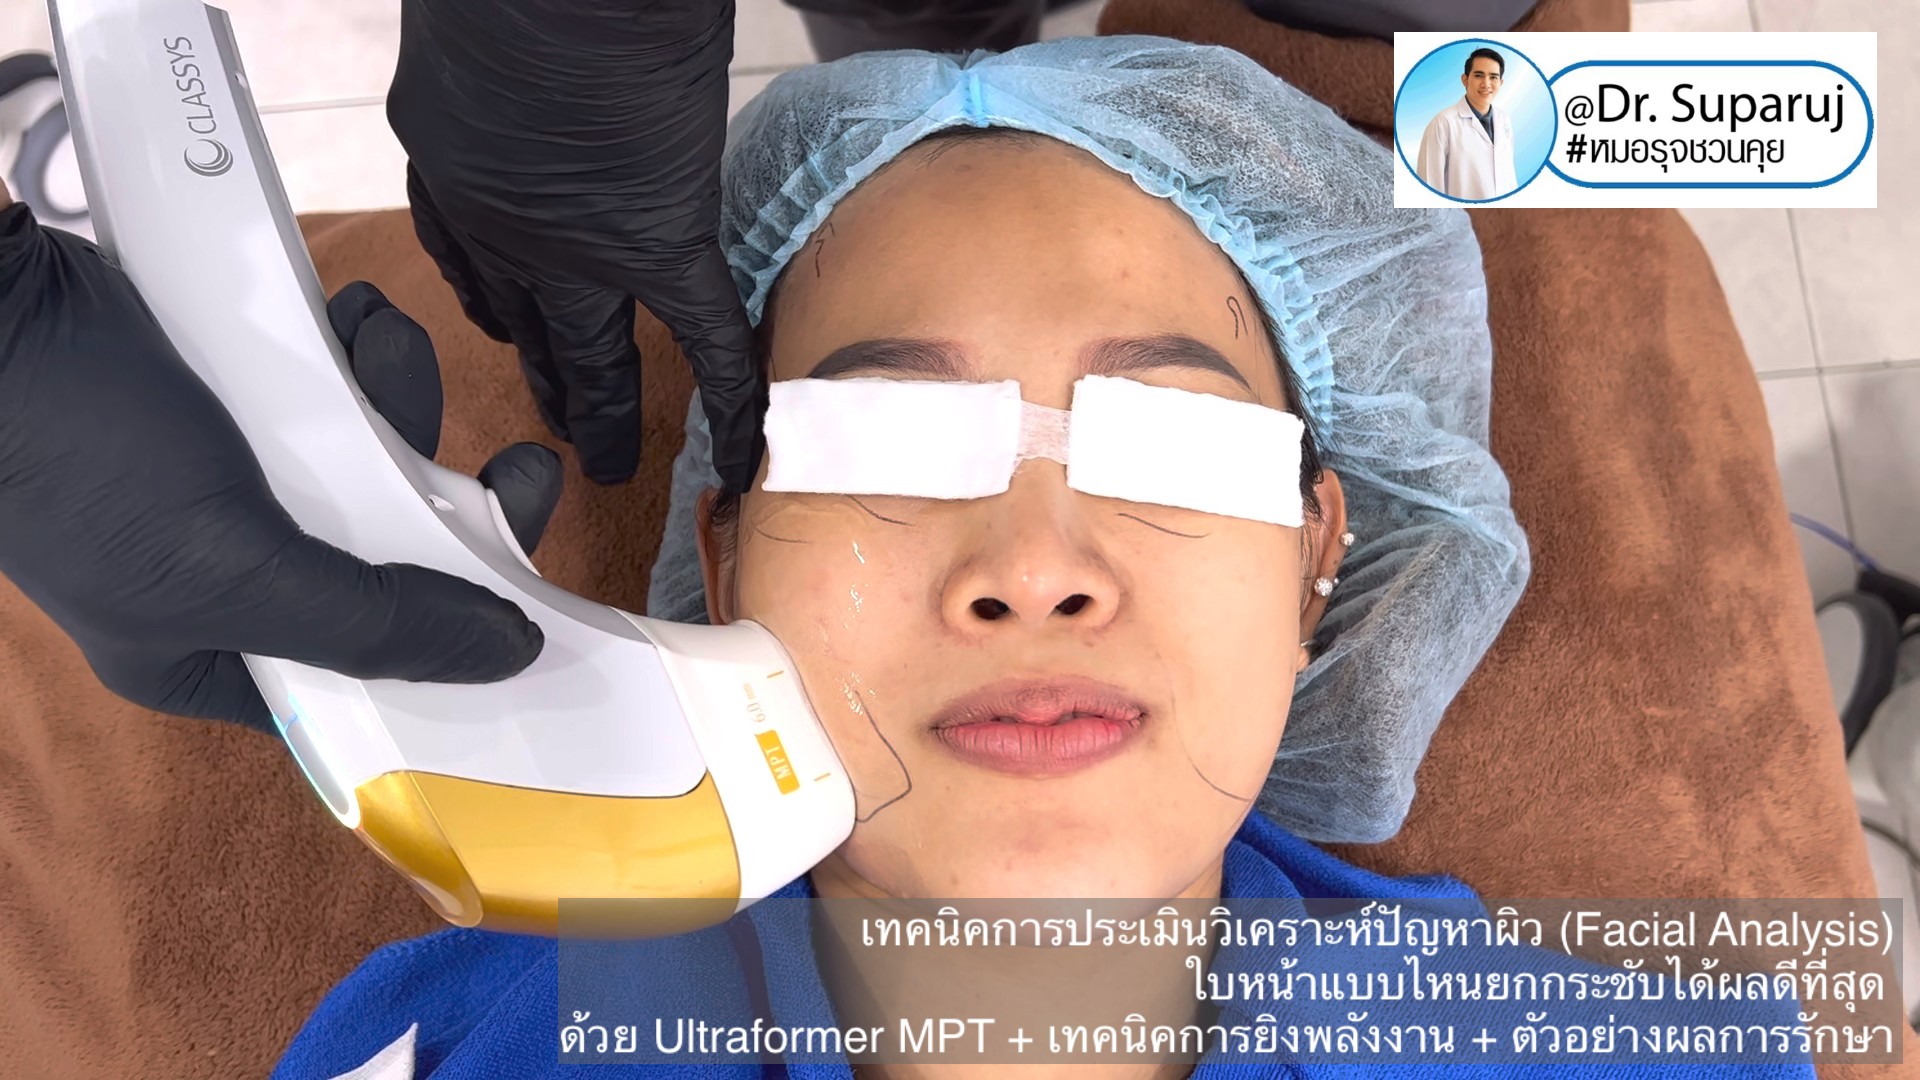  เทคนิคการประเมินวิเคราะห์ปัญหาผิว (Facial Analysis) ใบหน้าแบบไหนยกกระชับได้ผลดีที่สุด ด้วย Ultraformer MPT + เทคนิคการยิงพลังงาน + ตัวอย่างผลการรักษา